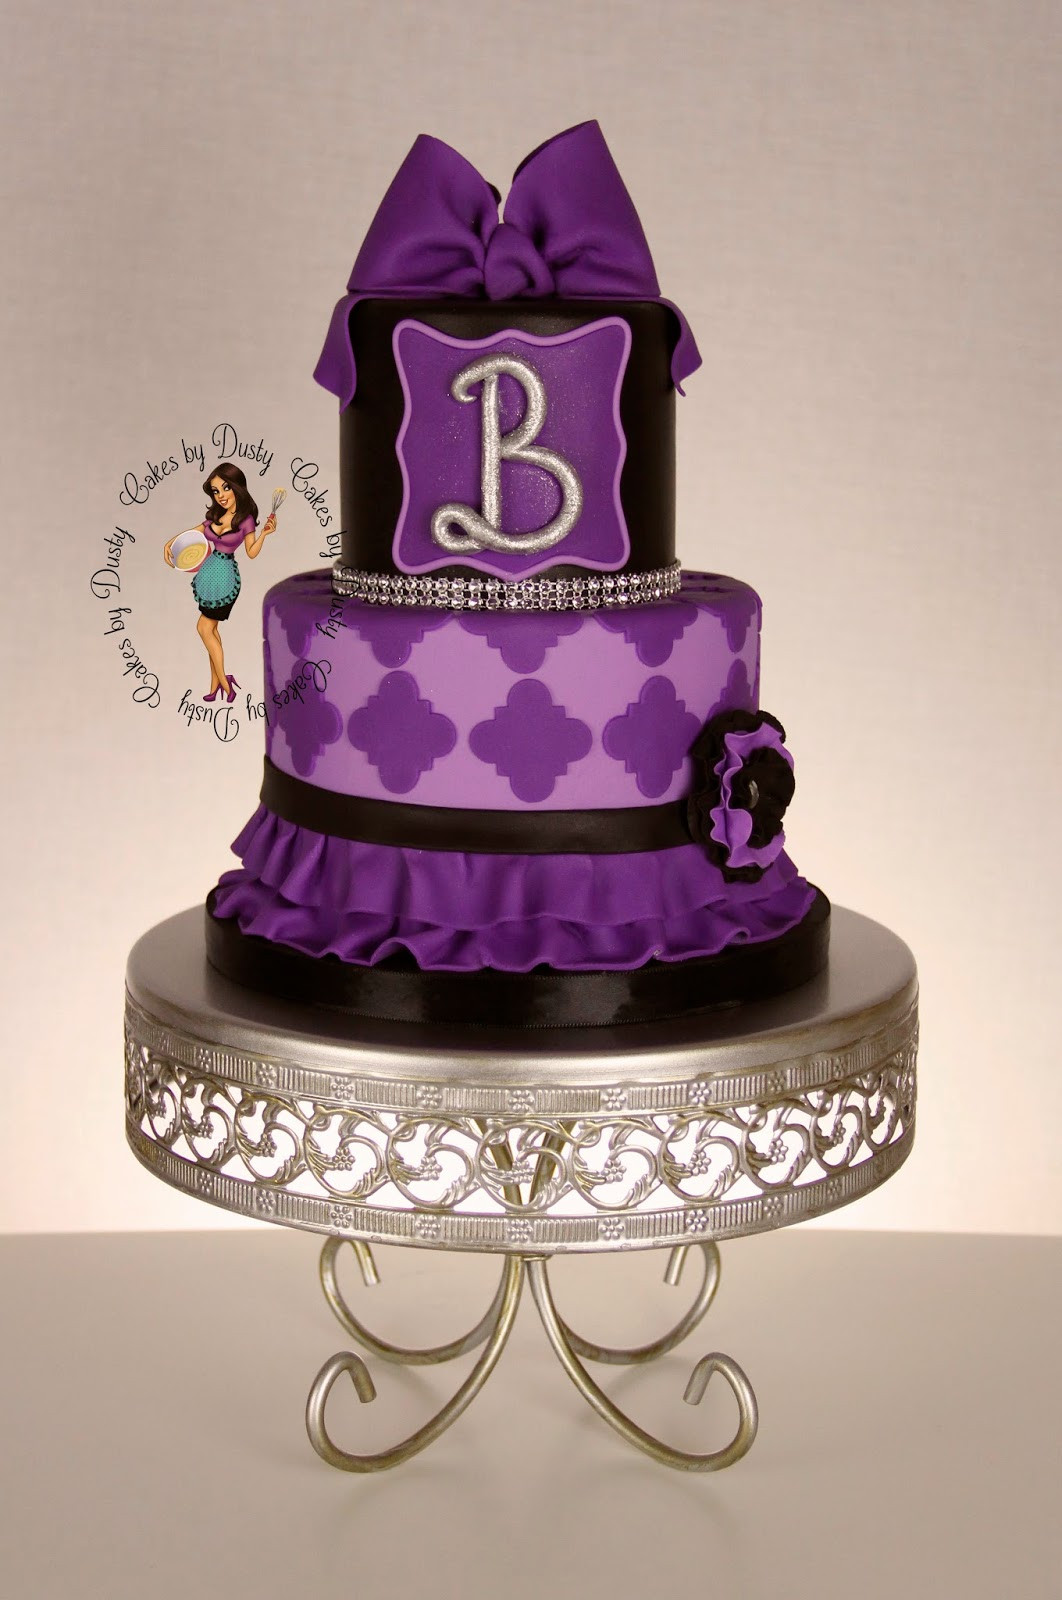 Happy Birthday Brenda Cake
 Cakes by Dusty Happy Birthday Brenda